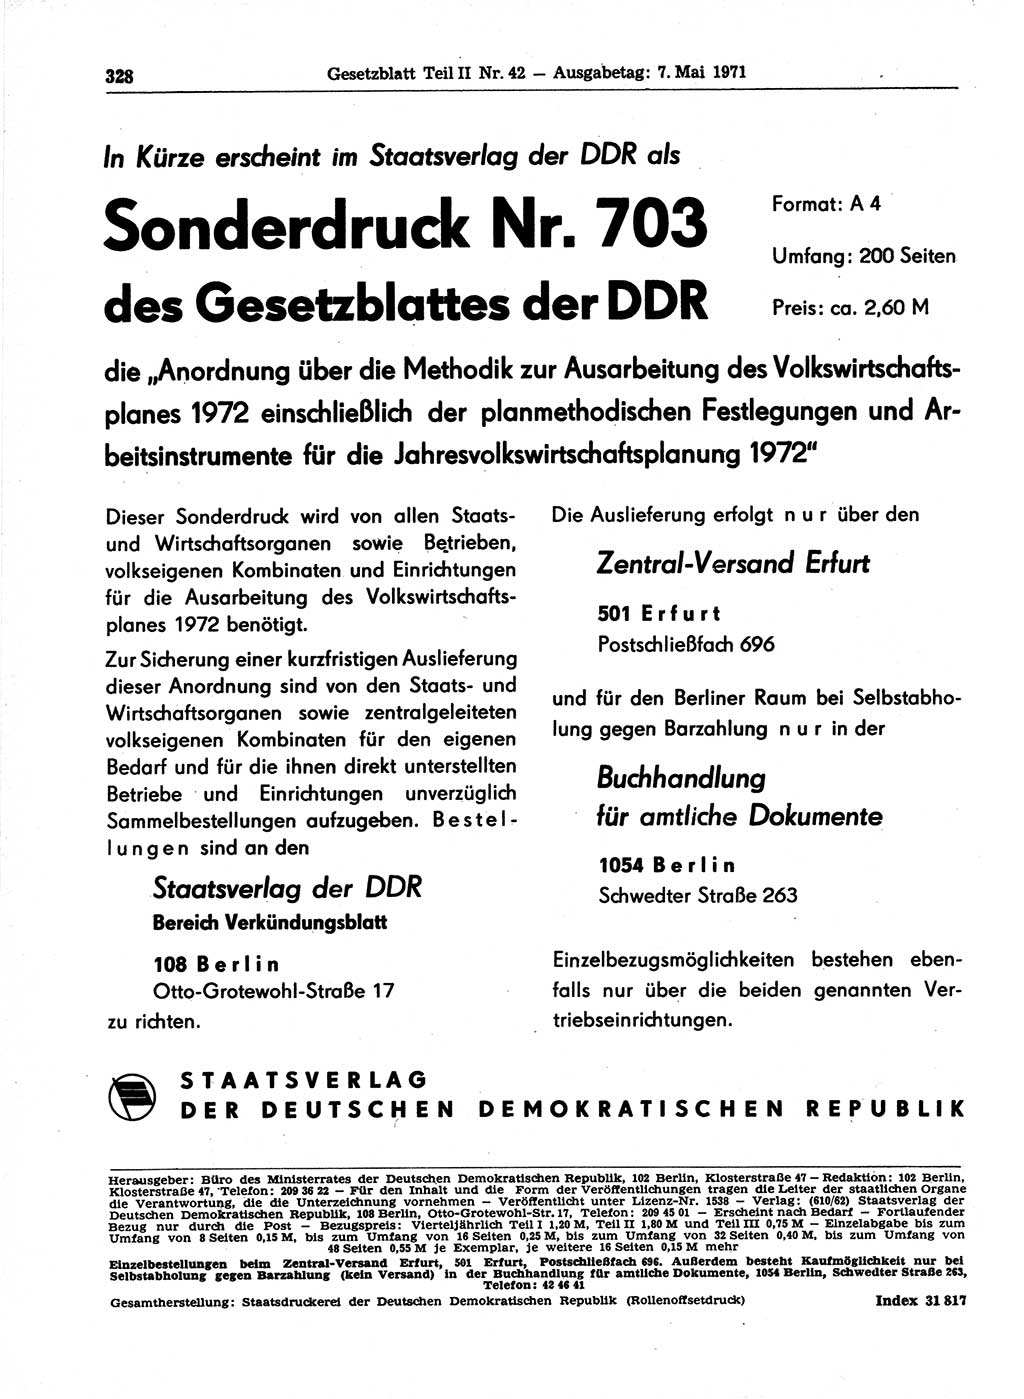 Gesetzblatt (GBl.) der Deutschen Demokratischen Republik (DDR) Teil ⅠⅠ 1971, Seite 328 (GBl. DDR ⅠⅠ 1971, S. 328)